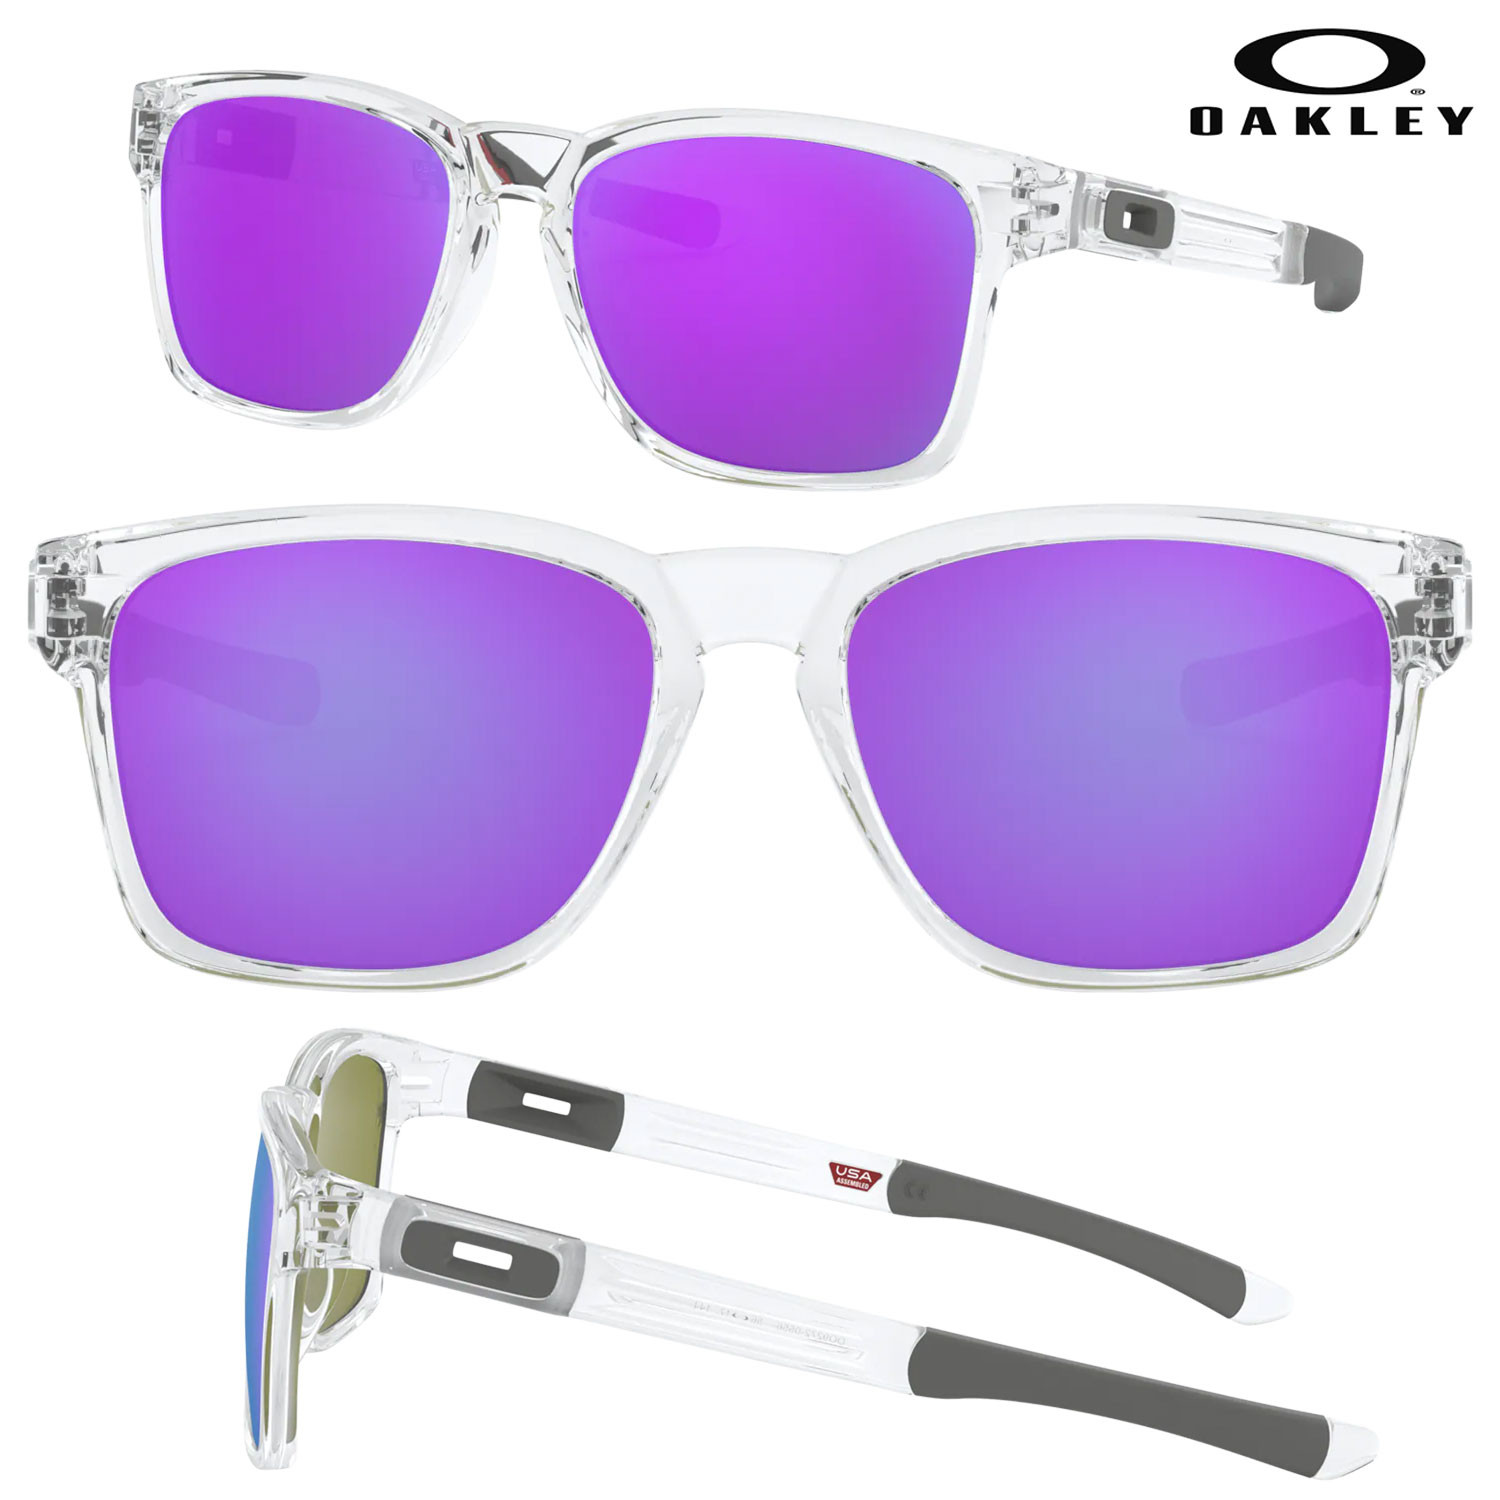 Catalyst Razor Blade Sunglasses